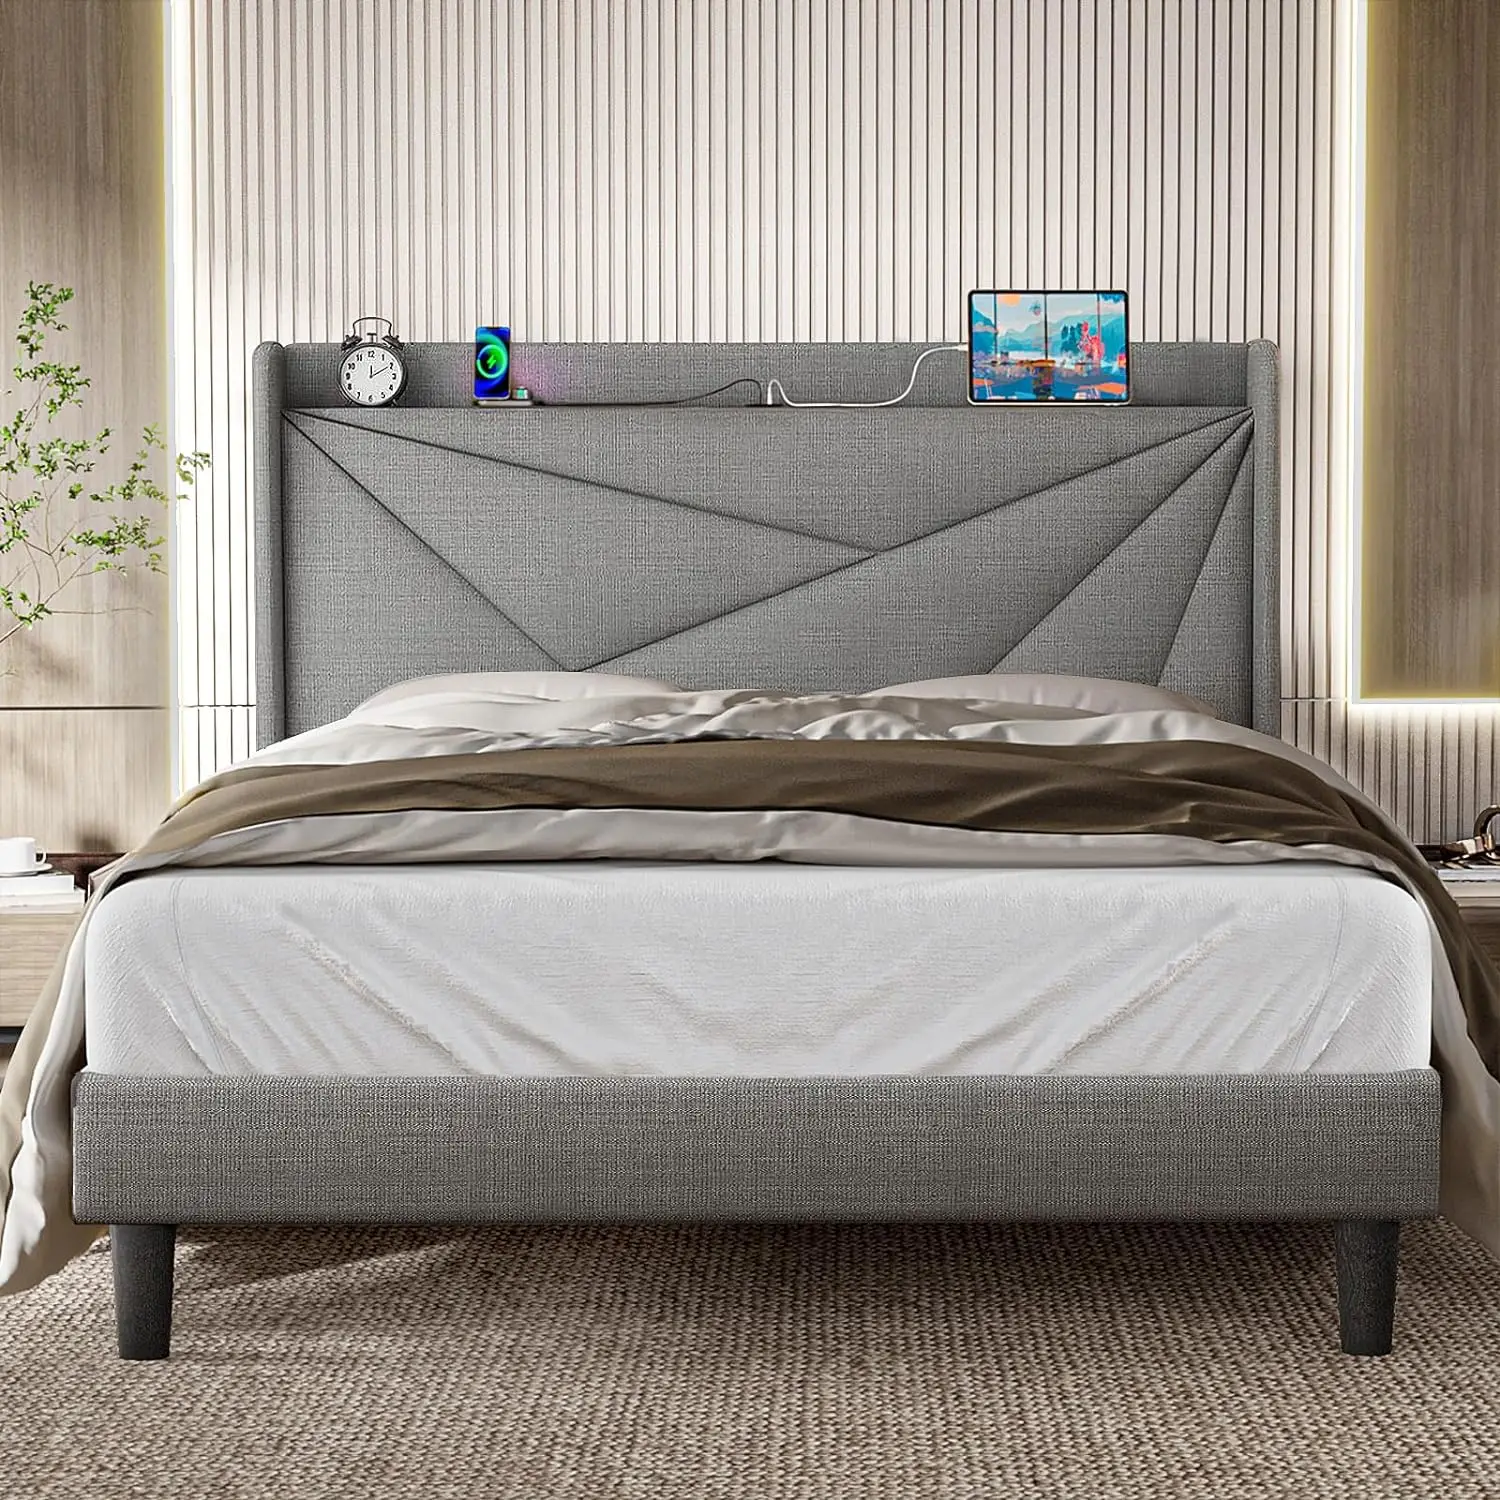 

Кровати большого размера с изголовьем кровати, рама для кровати с мягкой платформой с зарядной станцией, основание для матраса с деревянными планками